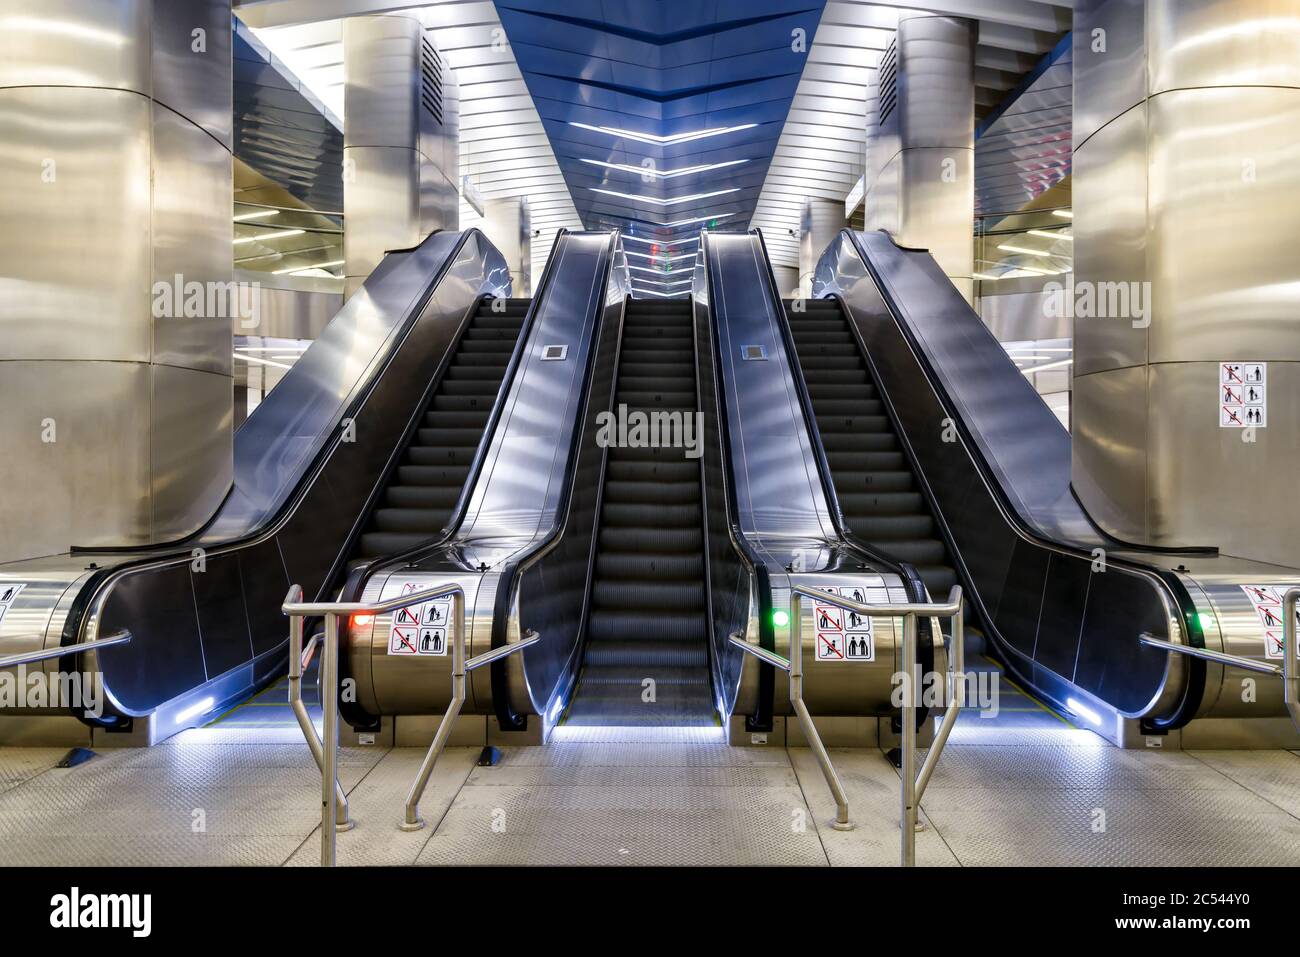 MOSCA - 10 AGOSTO 2016: Scala mobile in metropolitana, stazione della metropolitana Delovoy Tsentr. Si tratta di una stazione moderna, costruita nel 2014. Foto Stock